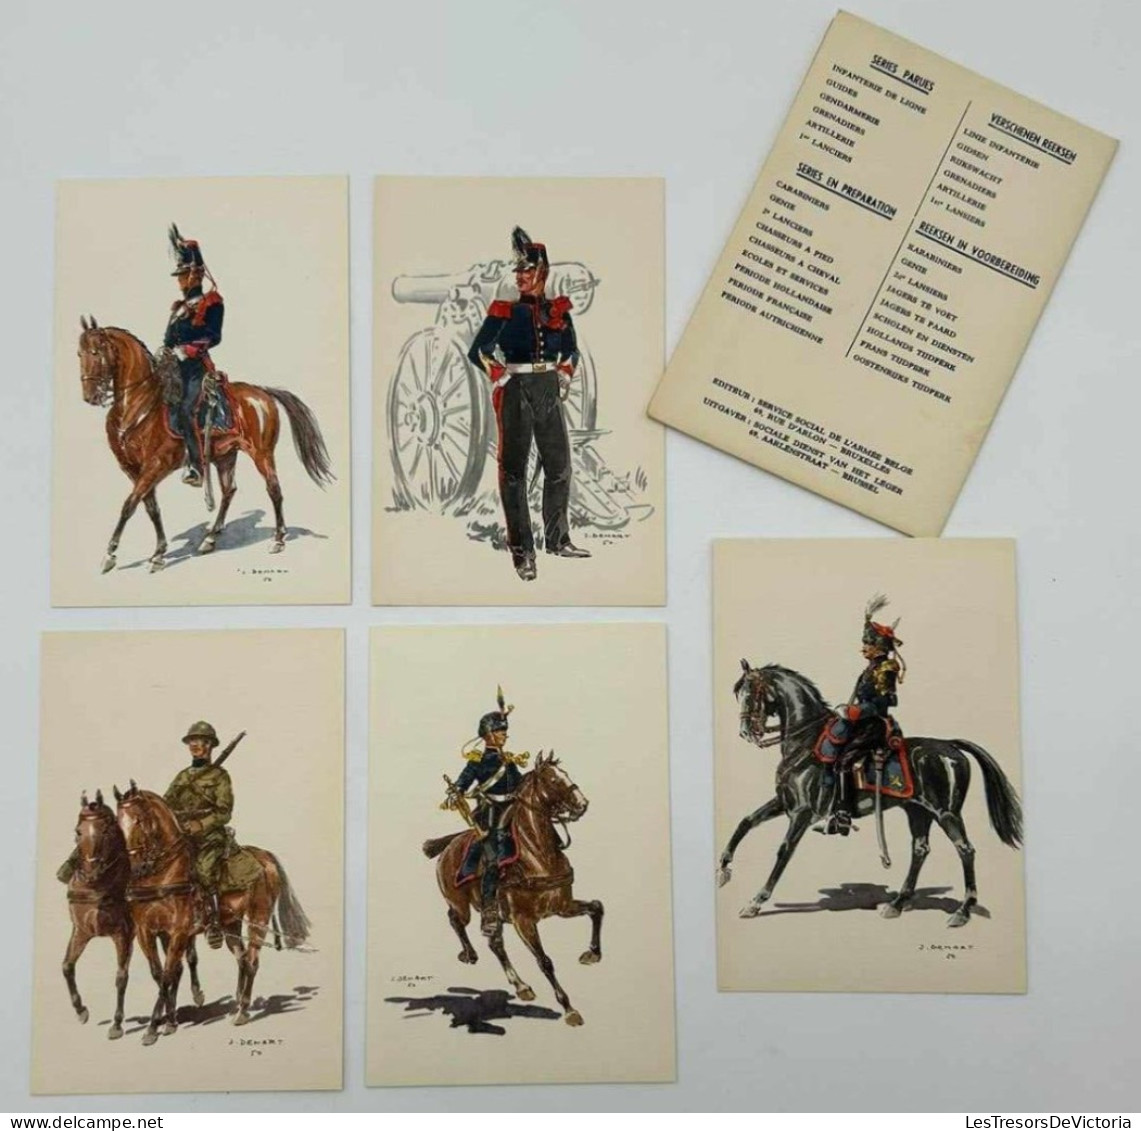 Cartes Postales Anciennes - J.demart - Artillerie - Costumes Militaires Belges - Lot De 5 Cpa - Uniformen